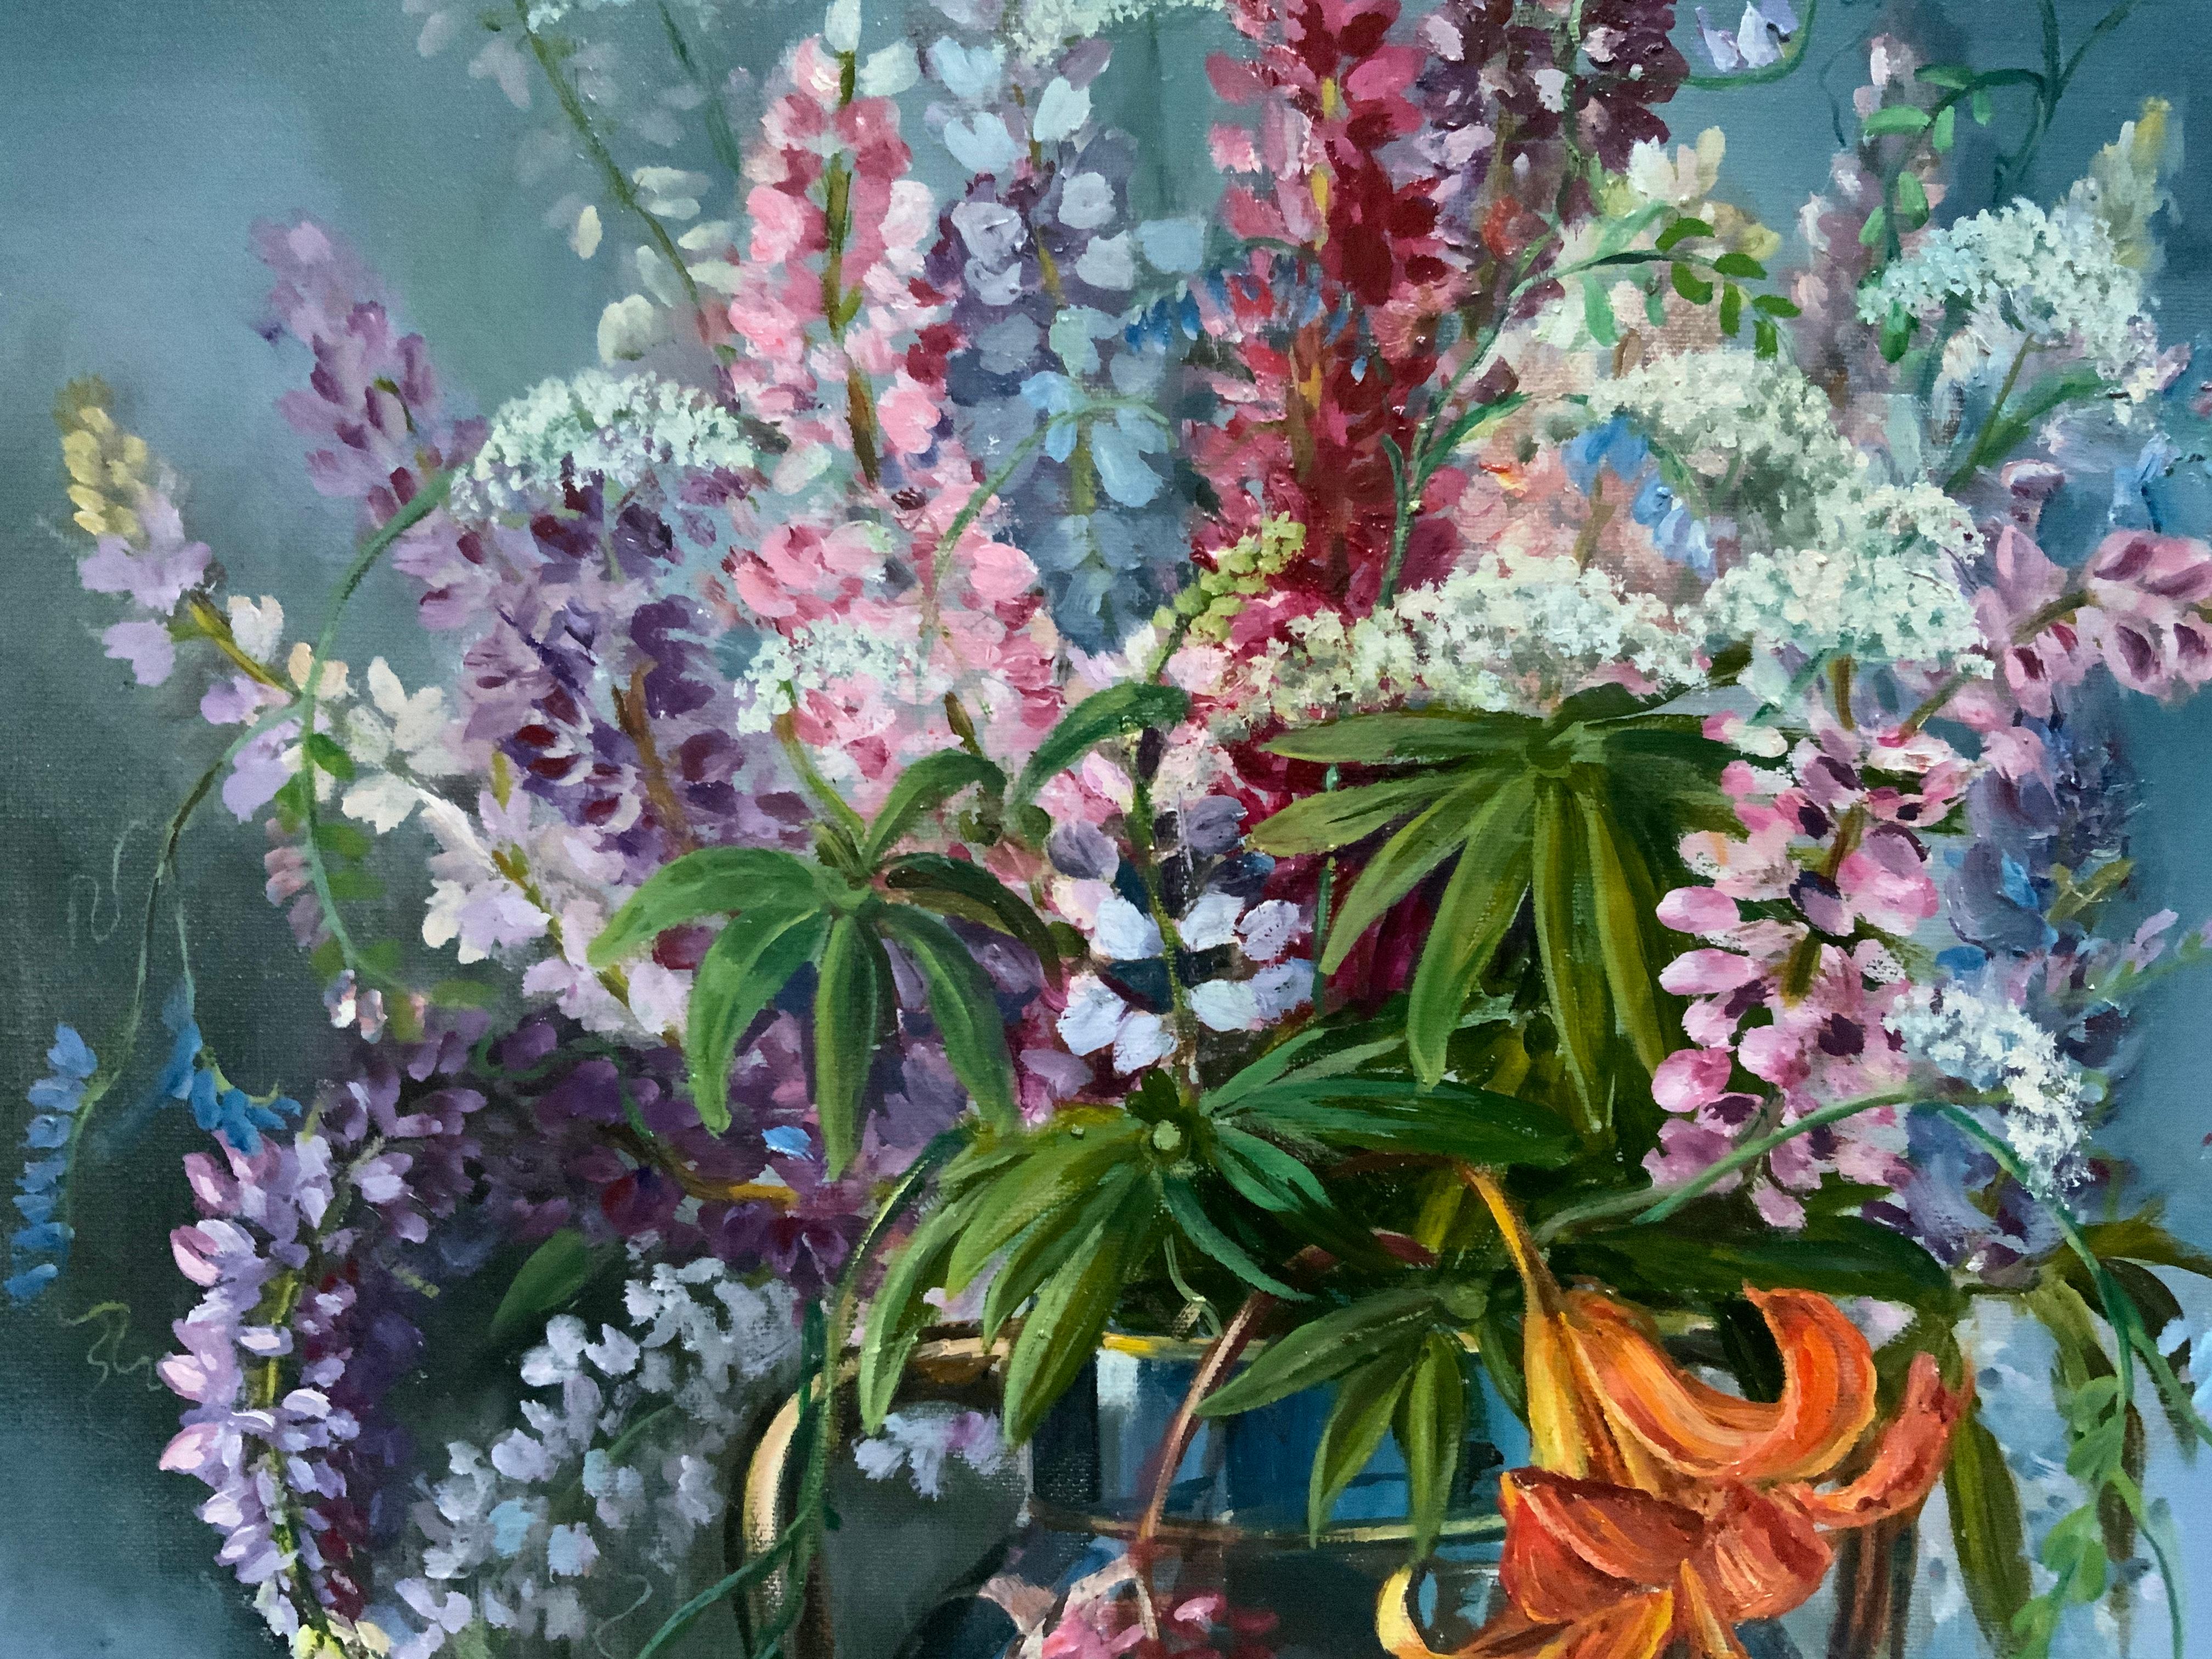 Lupinen sind einfache Gartenblumen, aber auf diesem Gemälde verwandeln sie sich nach dem Willen des Künstlers in einen üppigen und frischen Strauß! Die schöne Vase ergänzt nicht nur das Naturthema, sondern ist selbst ein Kunstwerk, das die Handlung